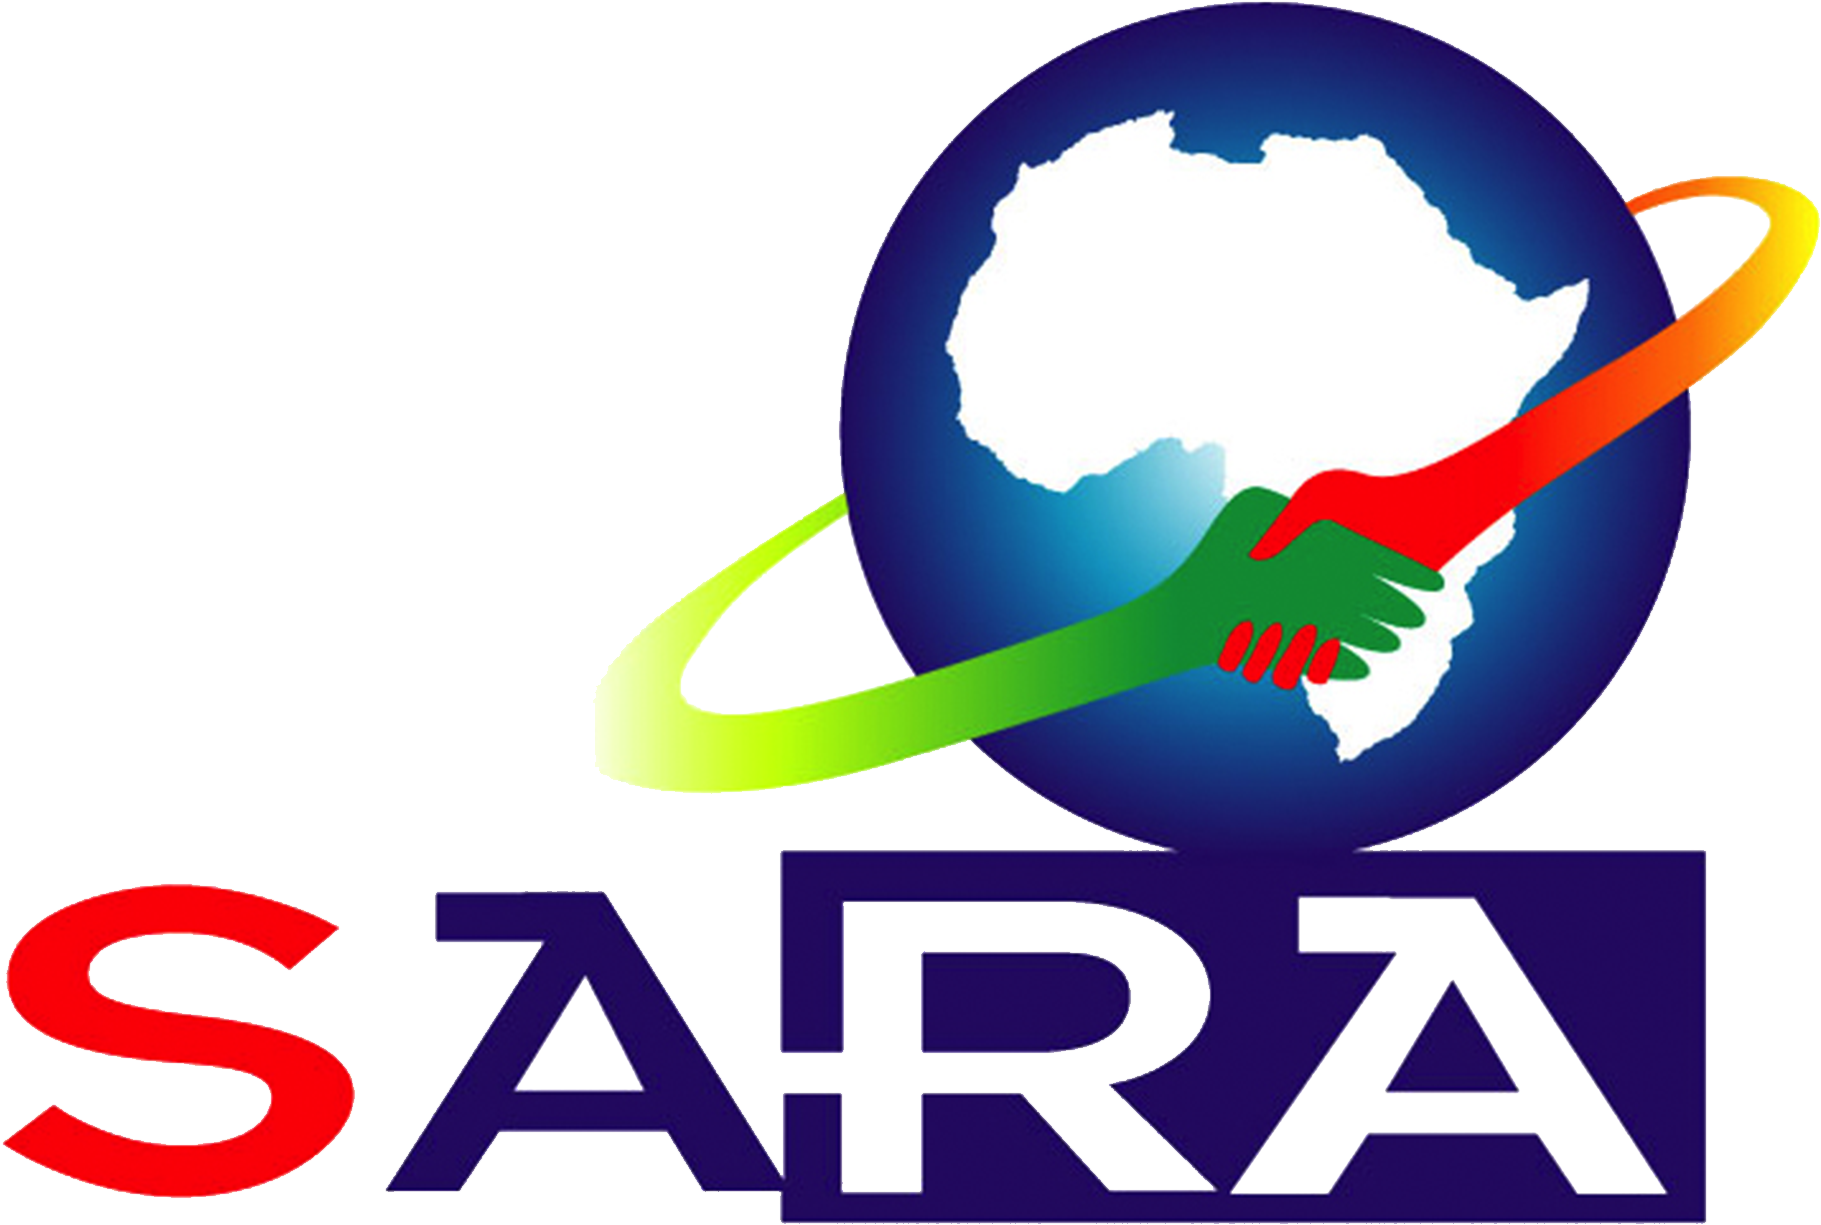 Nrz Boss Lands Top Sara Post - South African Railway Association (2028x1661)